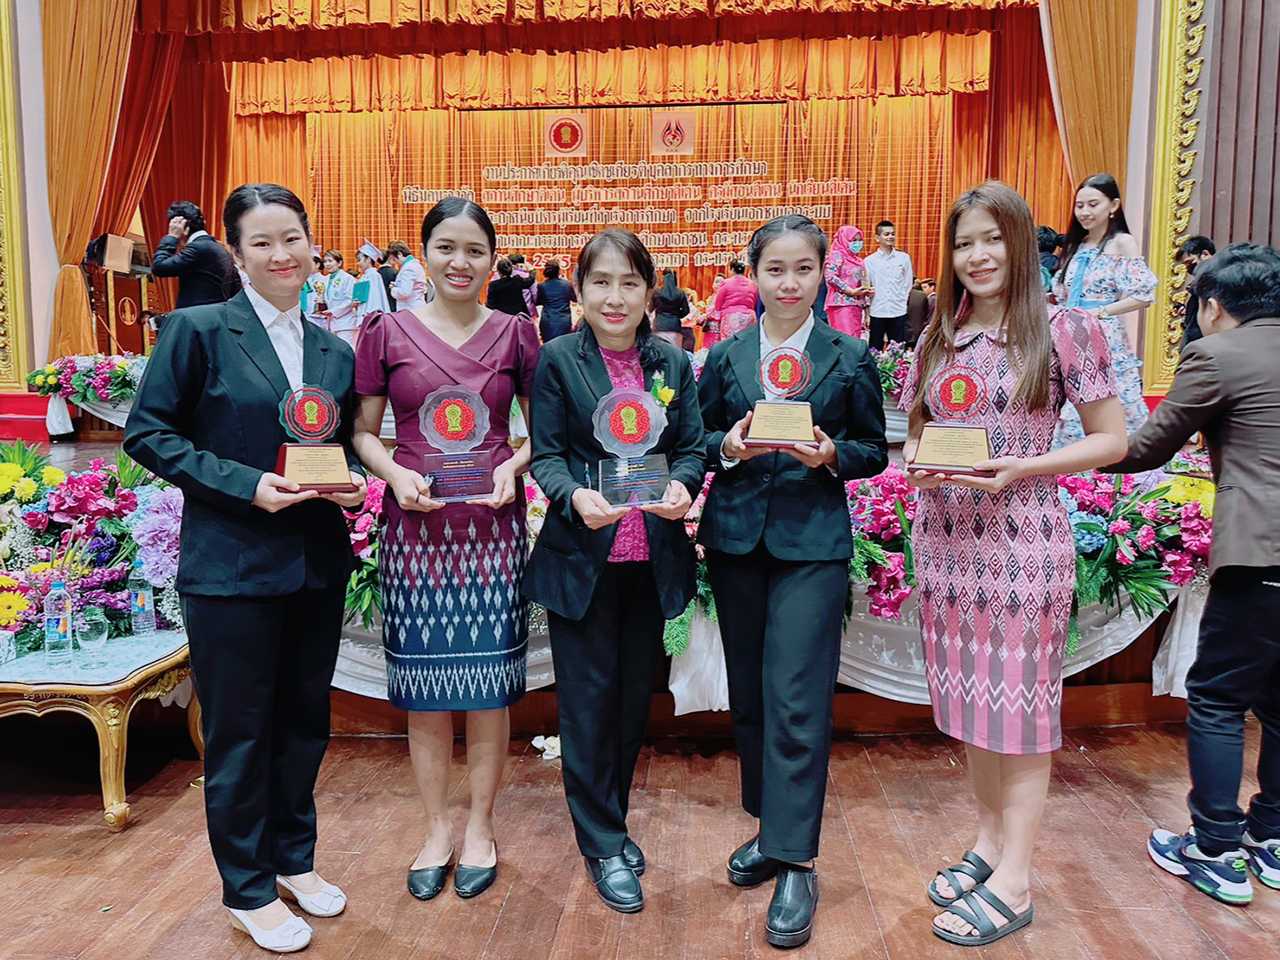 私達さくら日本語学校は、2022年10月29日にバンコクでTop of School award 賞を受賞しました。